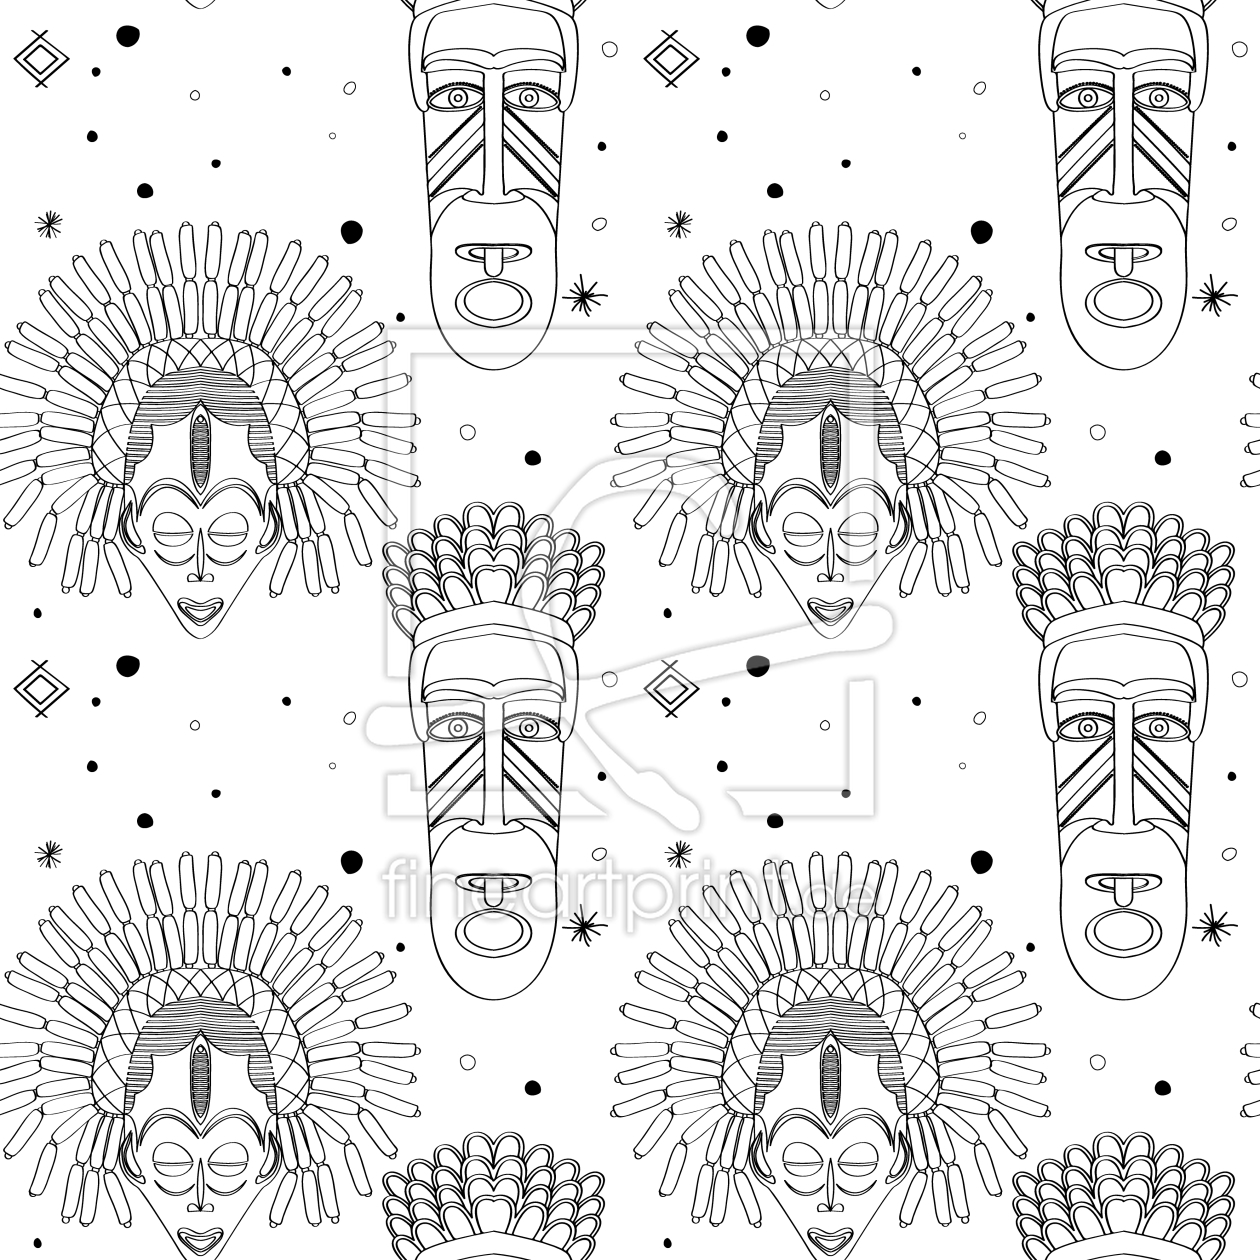 Bild-Nr.: 9014373 Ritual Masken erstellt von patterndesigns-com